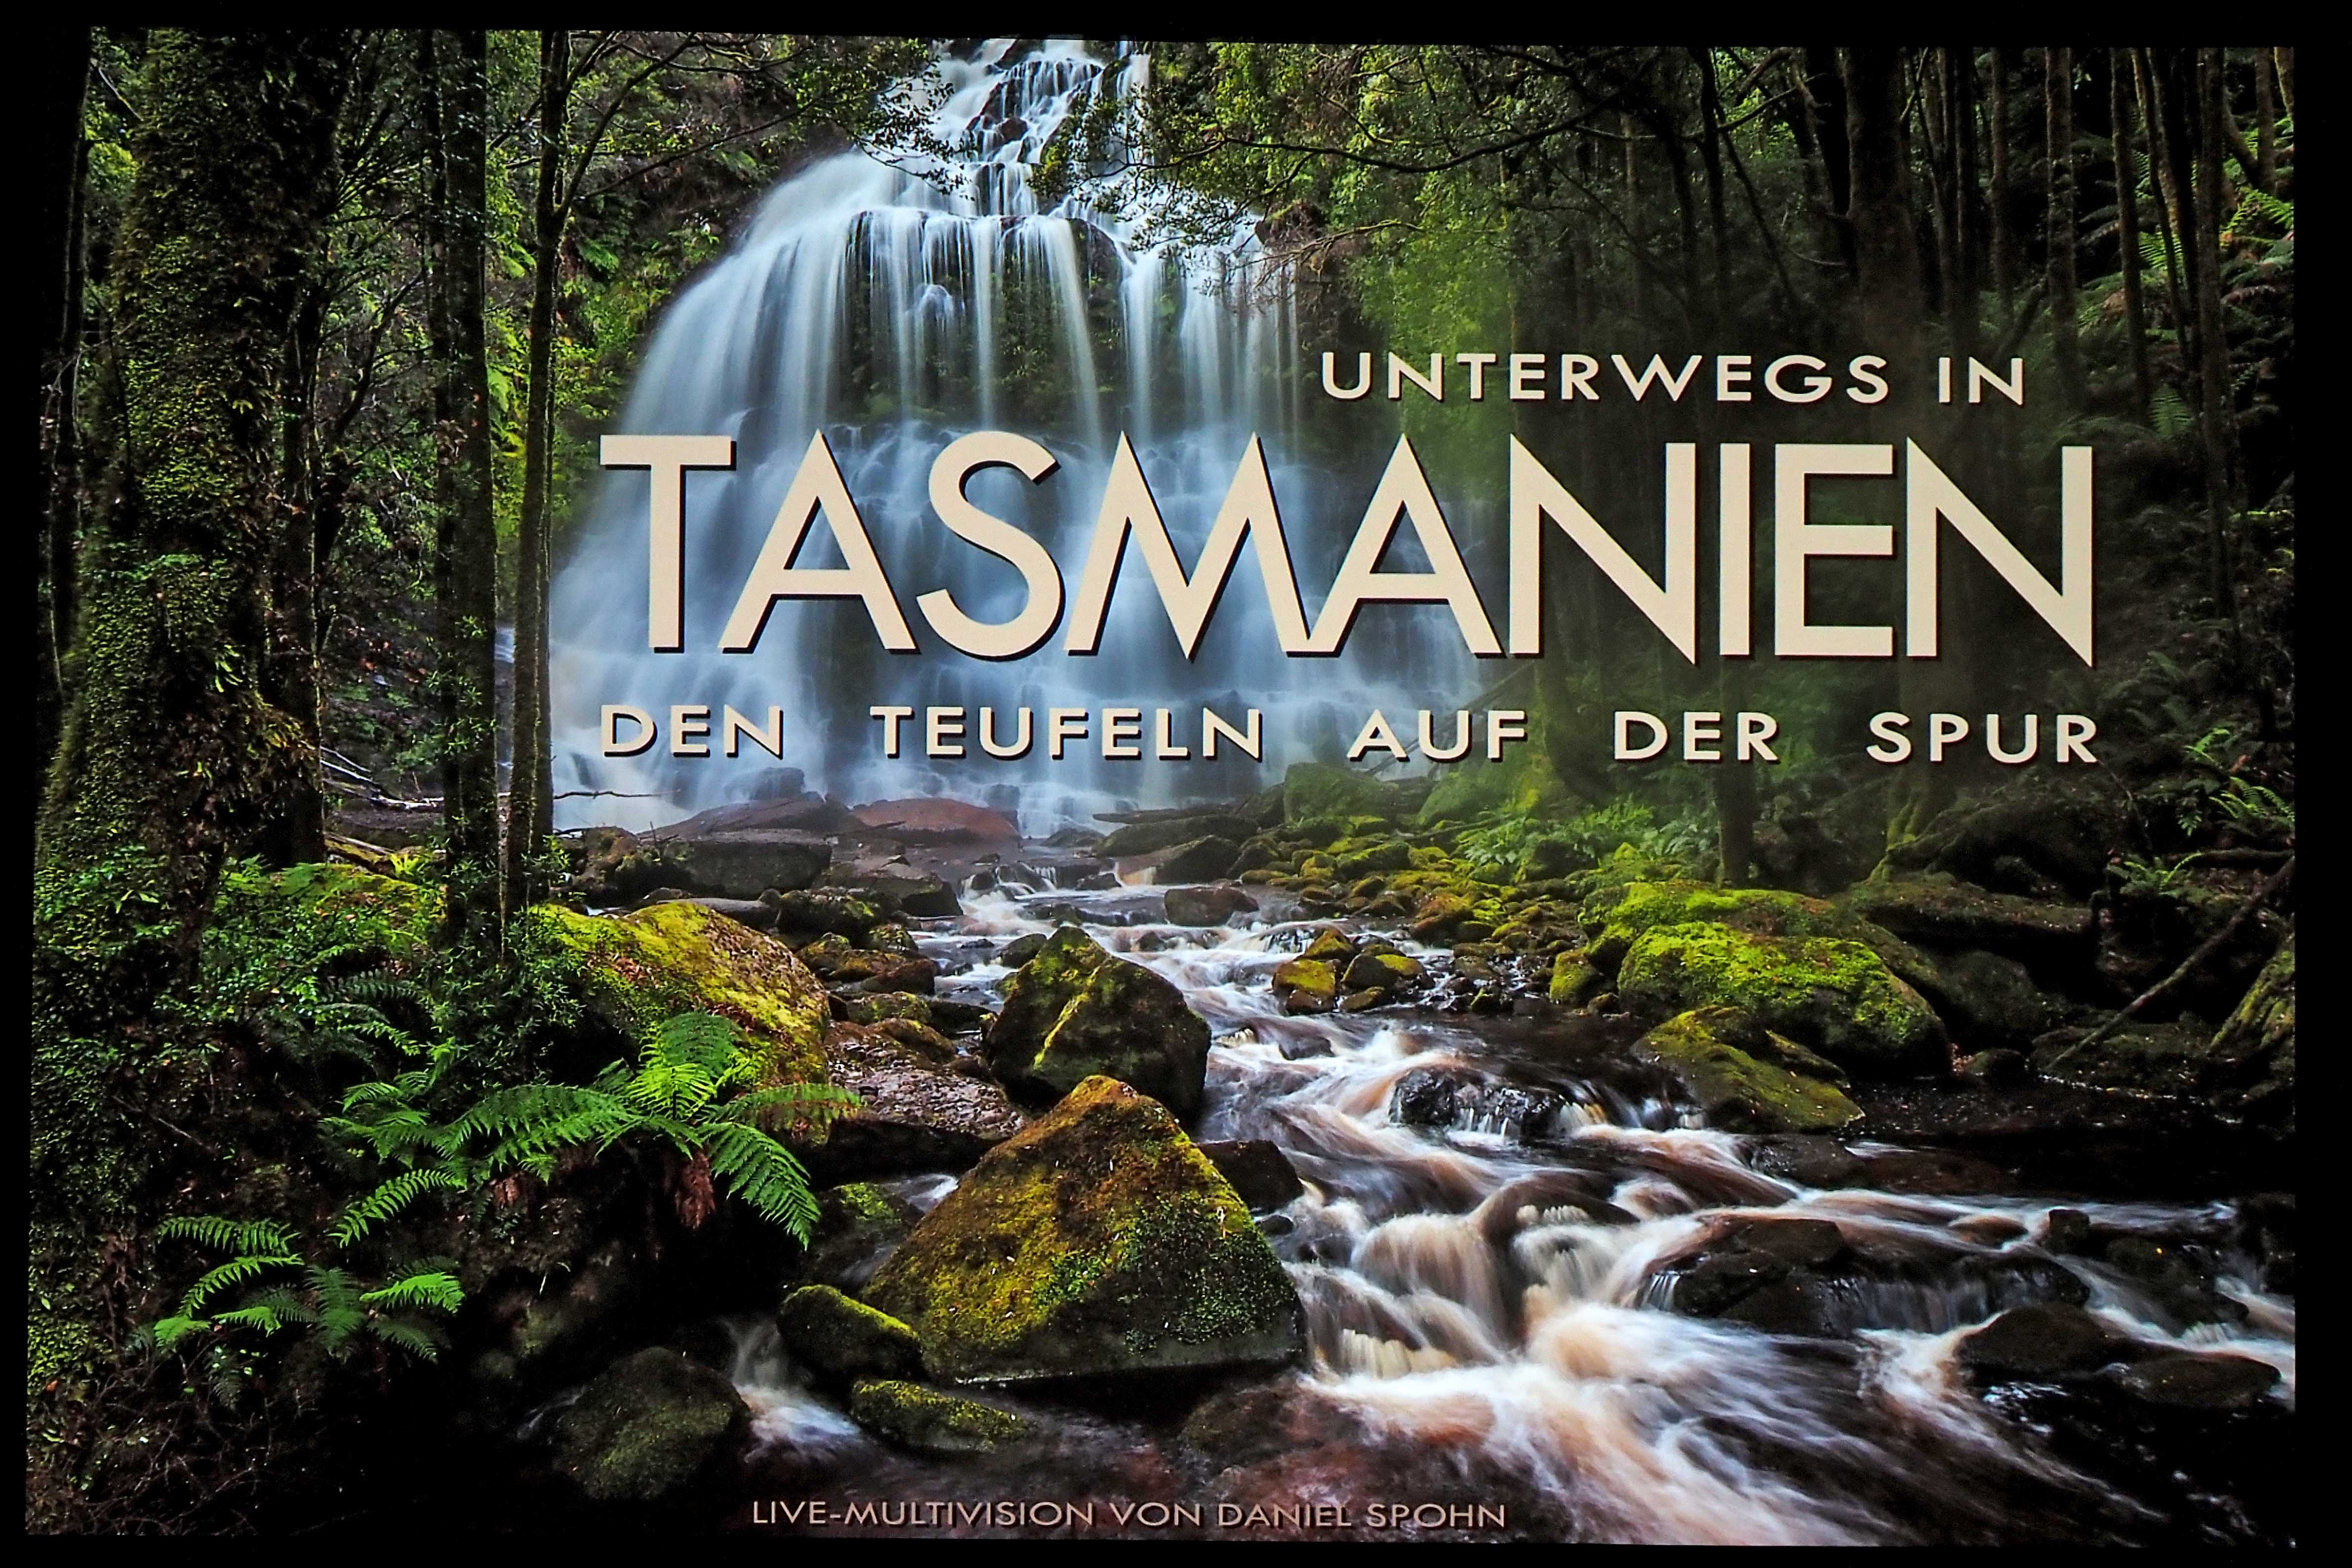 Faszinierende Fotoshow von Daniel Spohn über Tasmanien